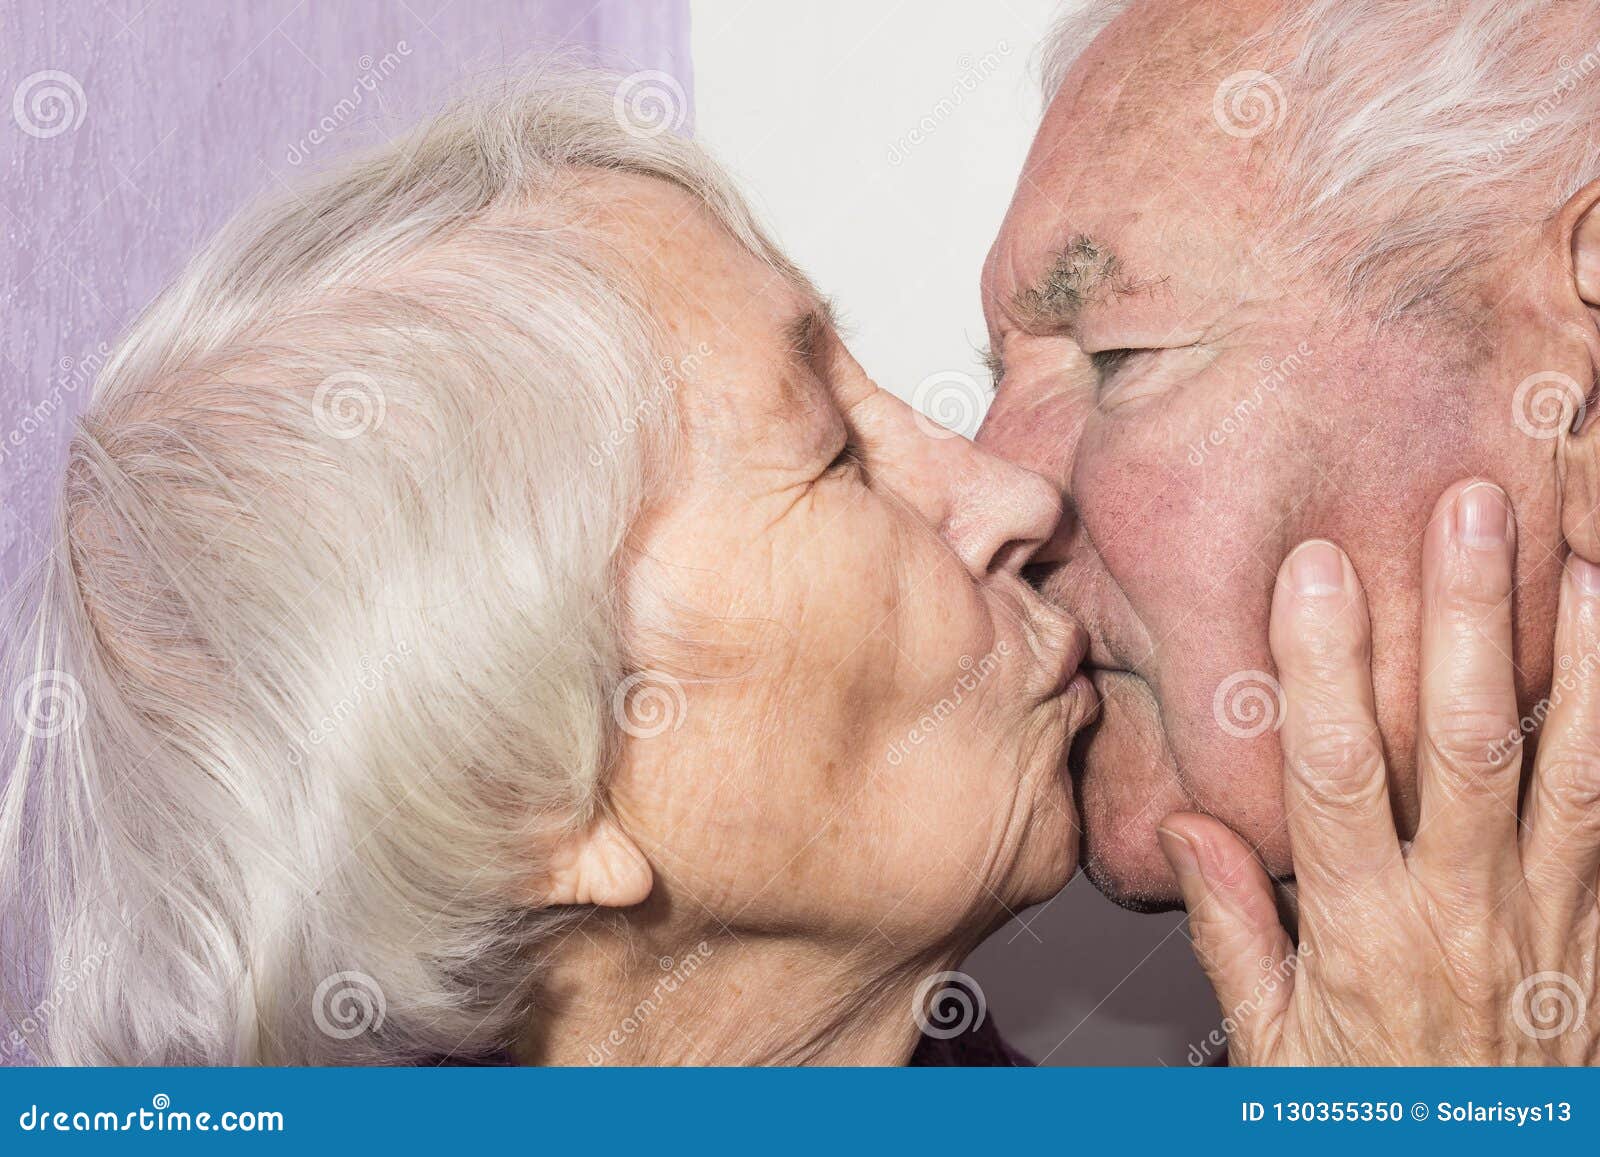 Men kissing old Men Kissing